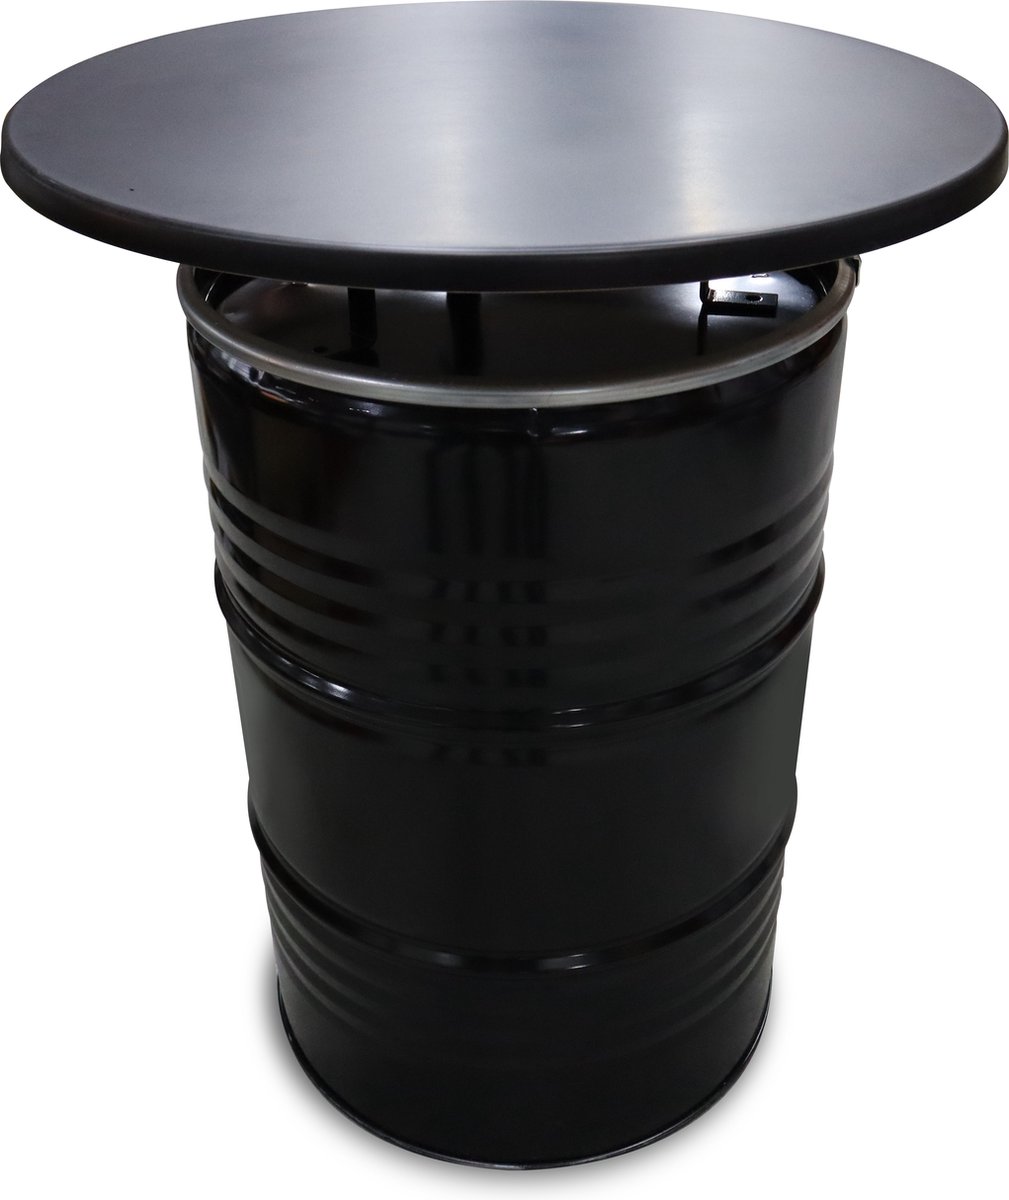 Olievat statafel met zwart blad 200 Liter olievat. 80x105 cm Statafel, bartafel, hangtafel, geschikt voor binnen en buiten gebruik